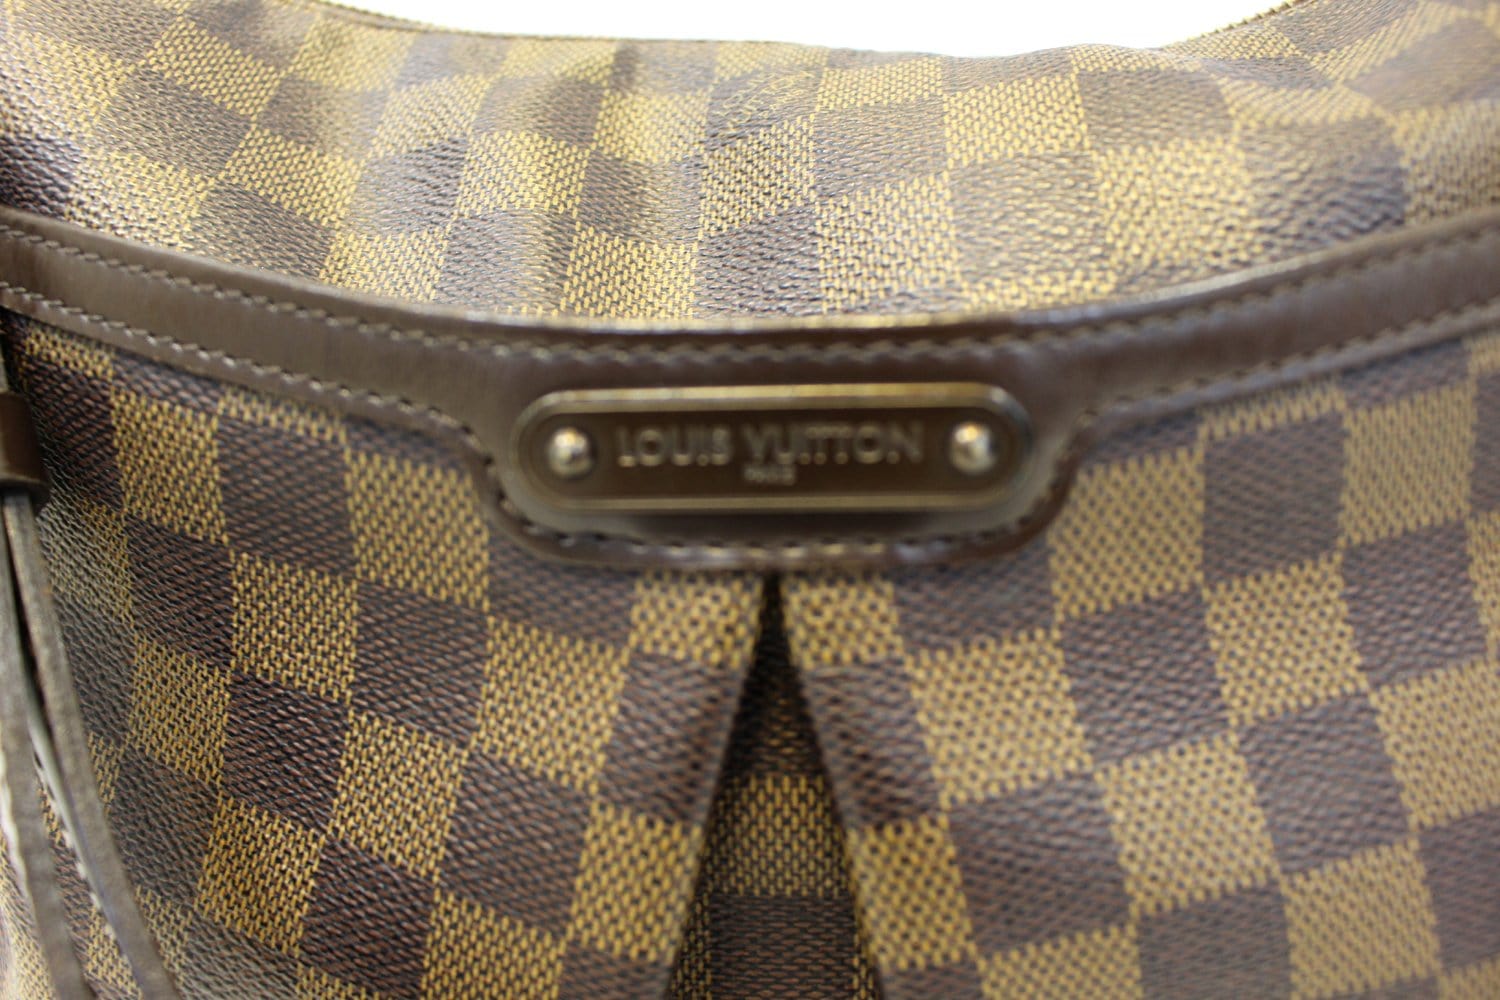 Louis Vuitton Bloomsbury GM Damier Ebene Handbag